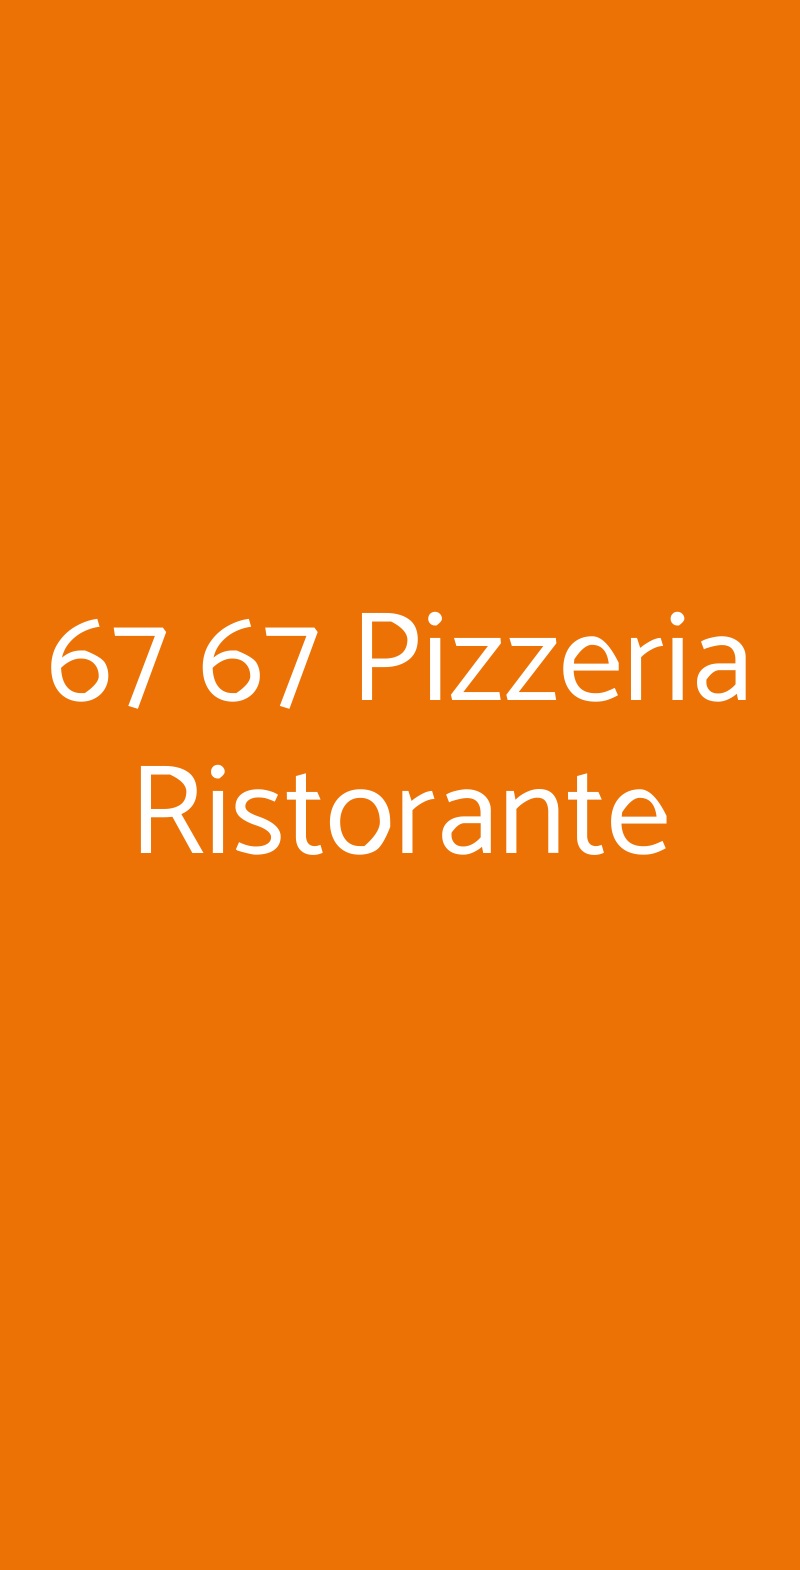 67 67 Pizzeria Ristorante Rozzano menù 1 pagina